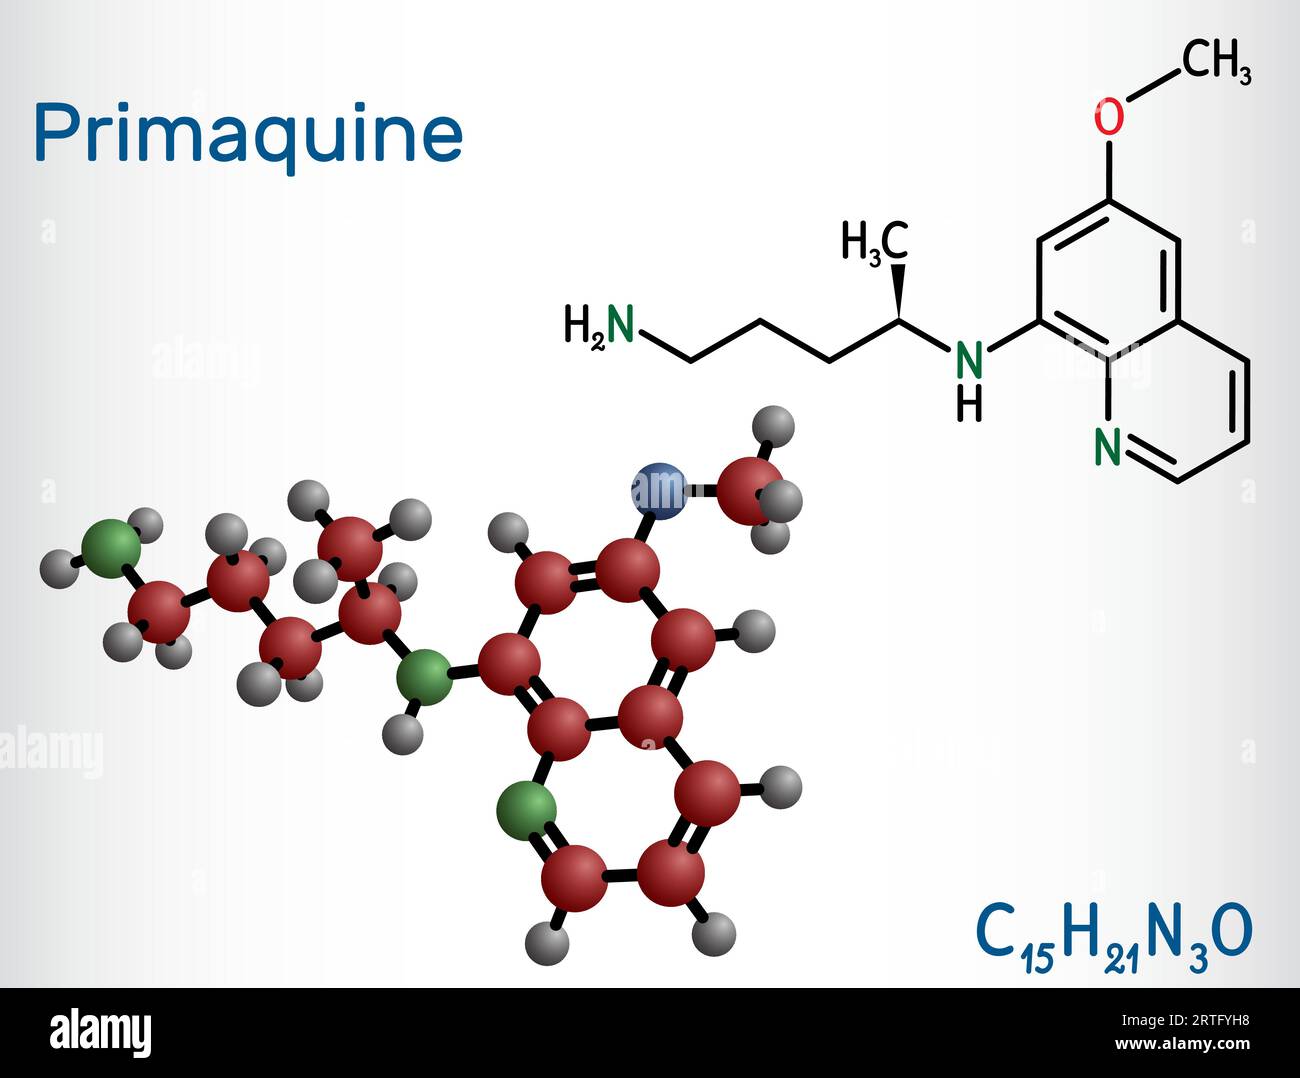 Primaquinmolekül. Es ist Aminochinolin, das zur Behandlung der Malaria verwendet wird. Strukturelle chemische Formel, Molekülmodell. Vektorillustration Stock Vektor